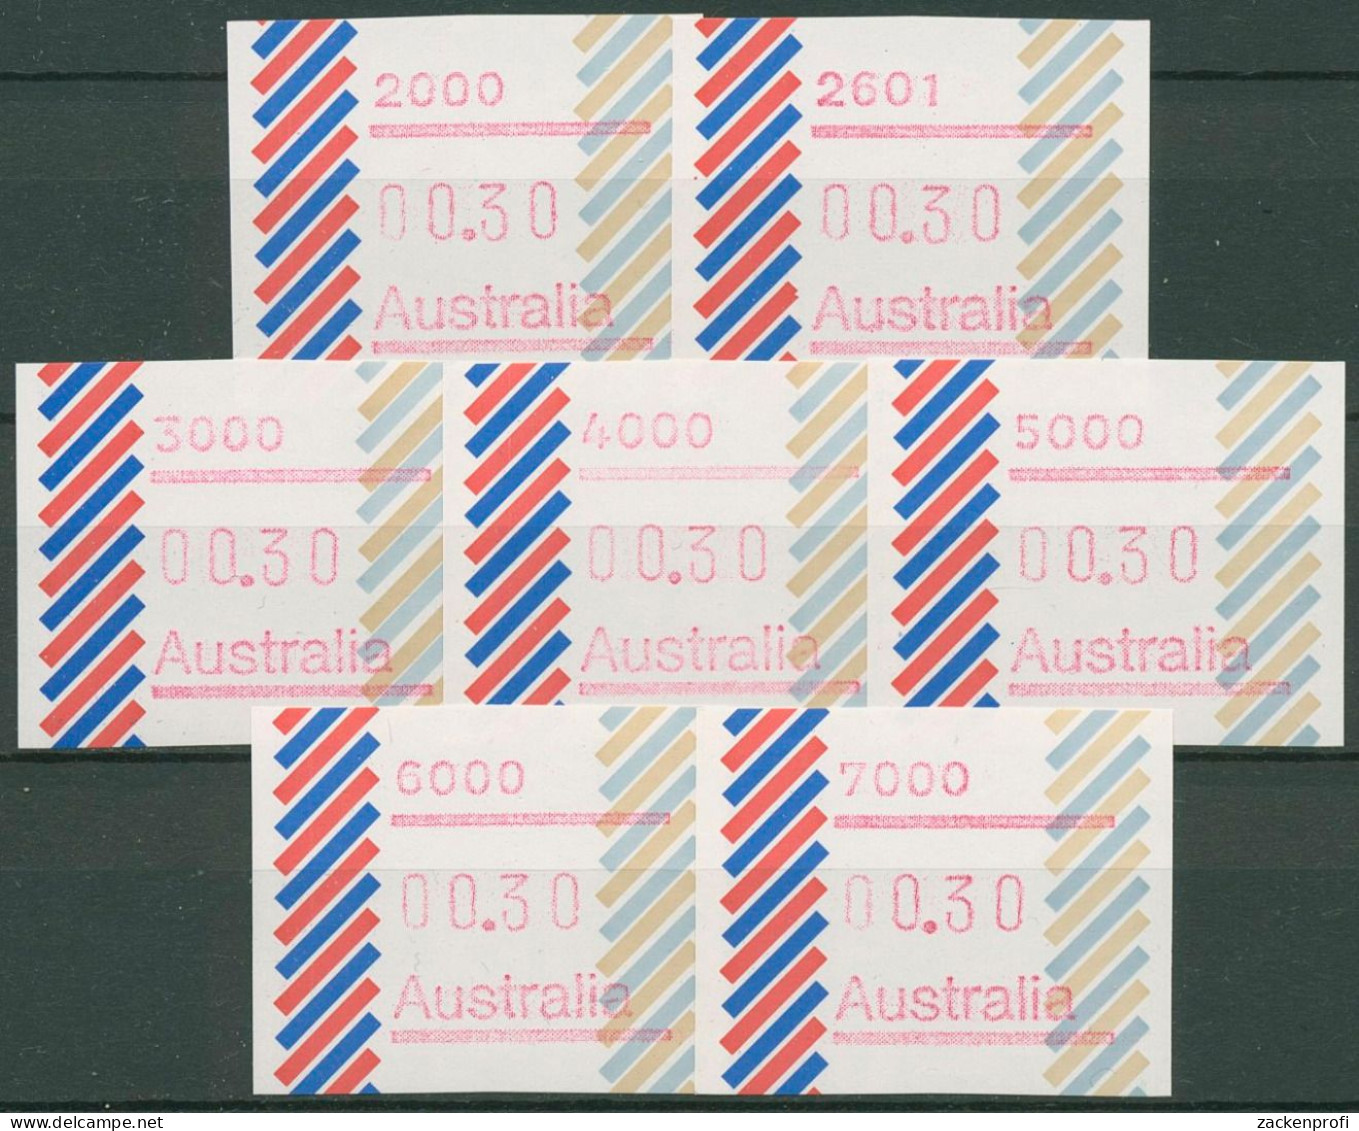 Australien 1984 Balken PO-Set (7) Automatenmarke 1 Postfrisch - Vignette [ATM]